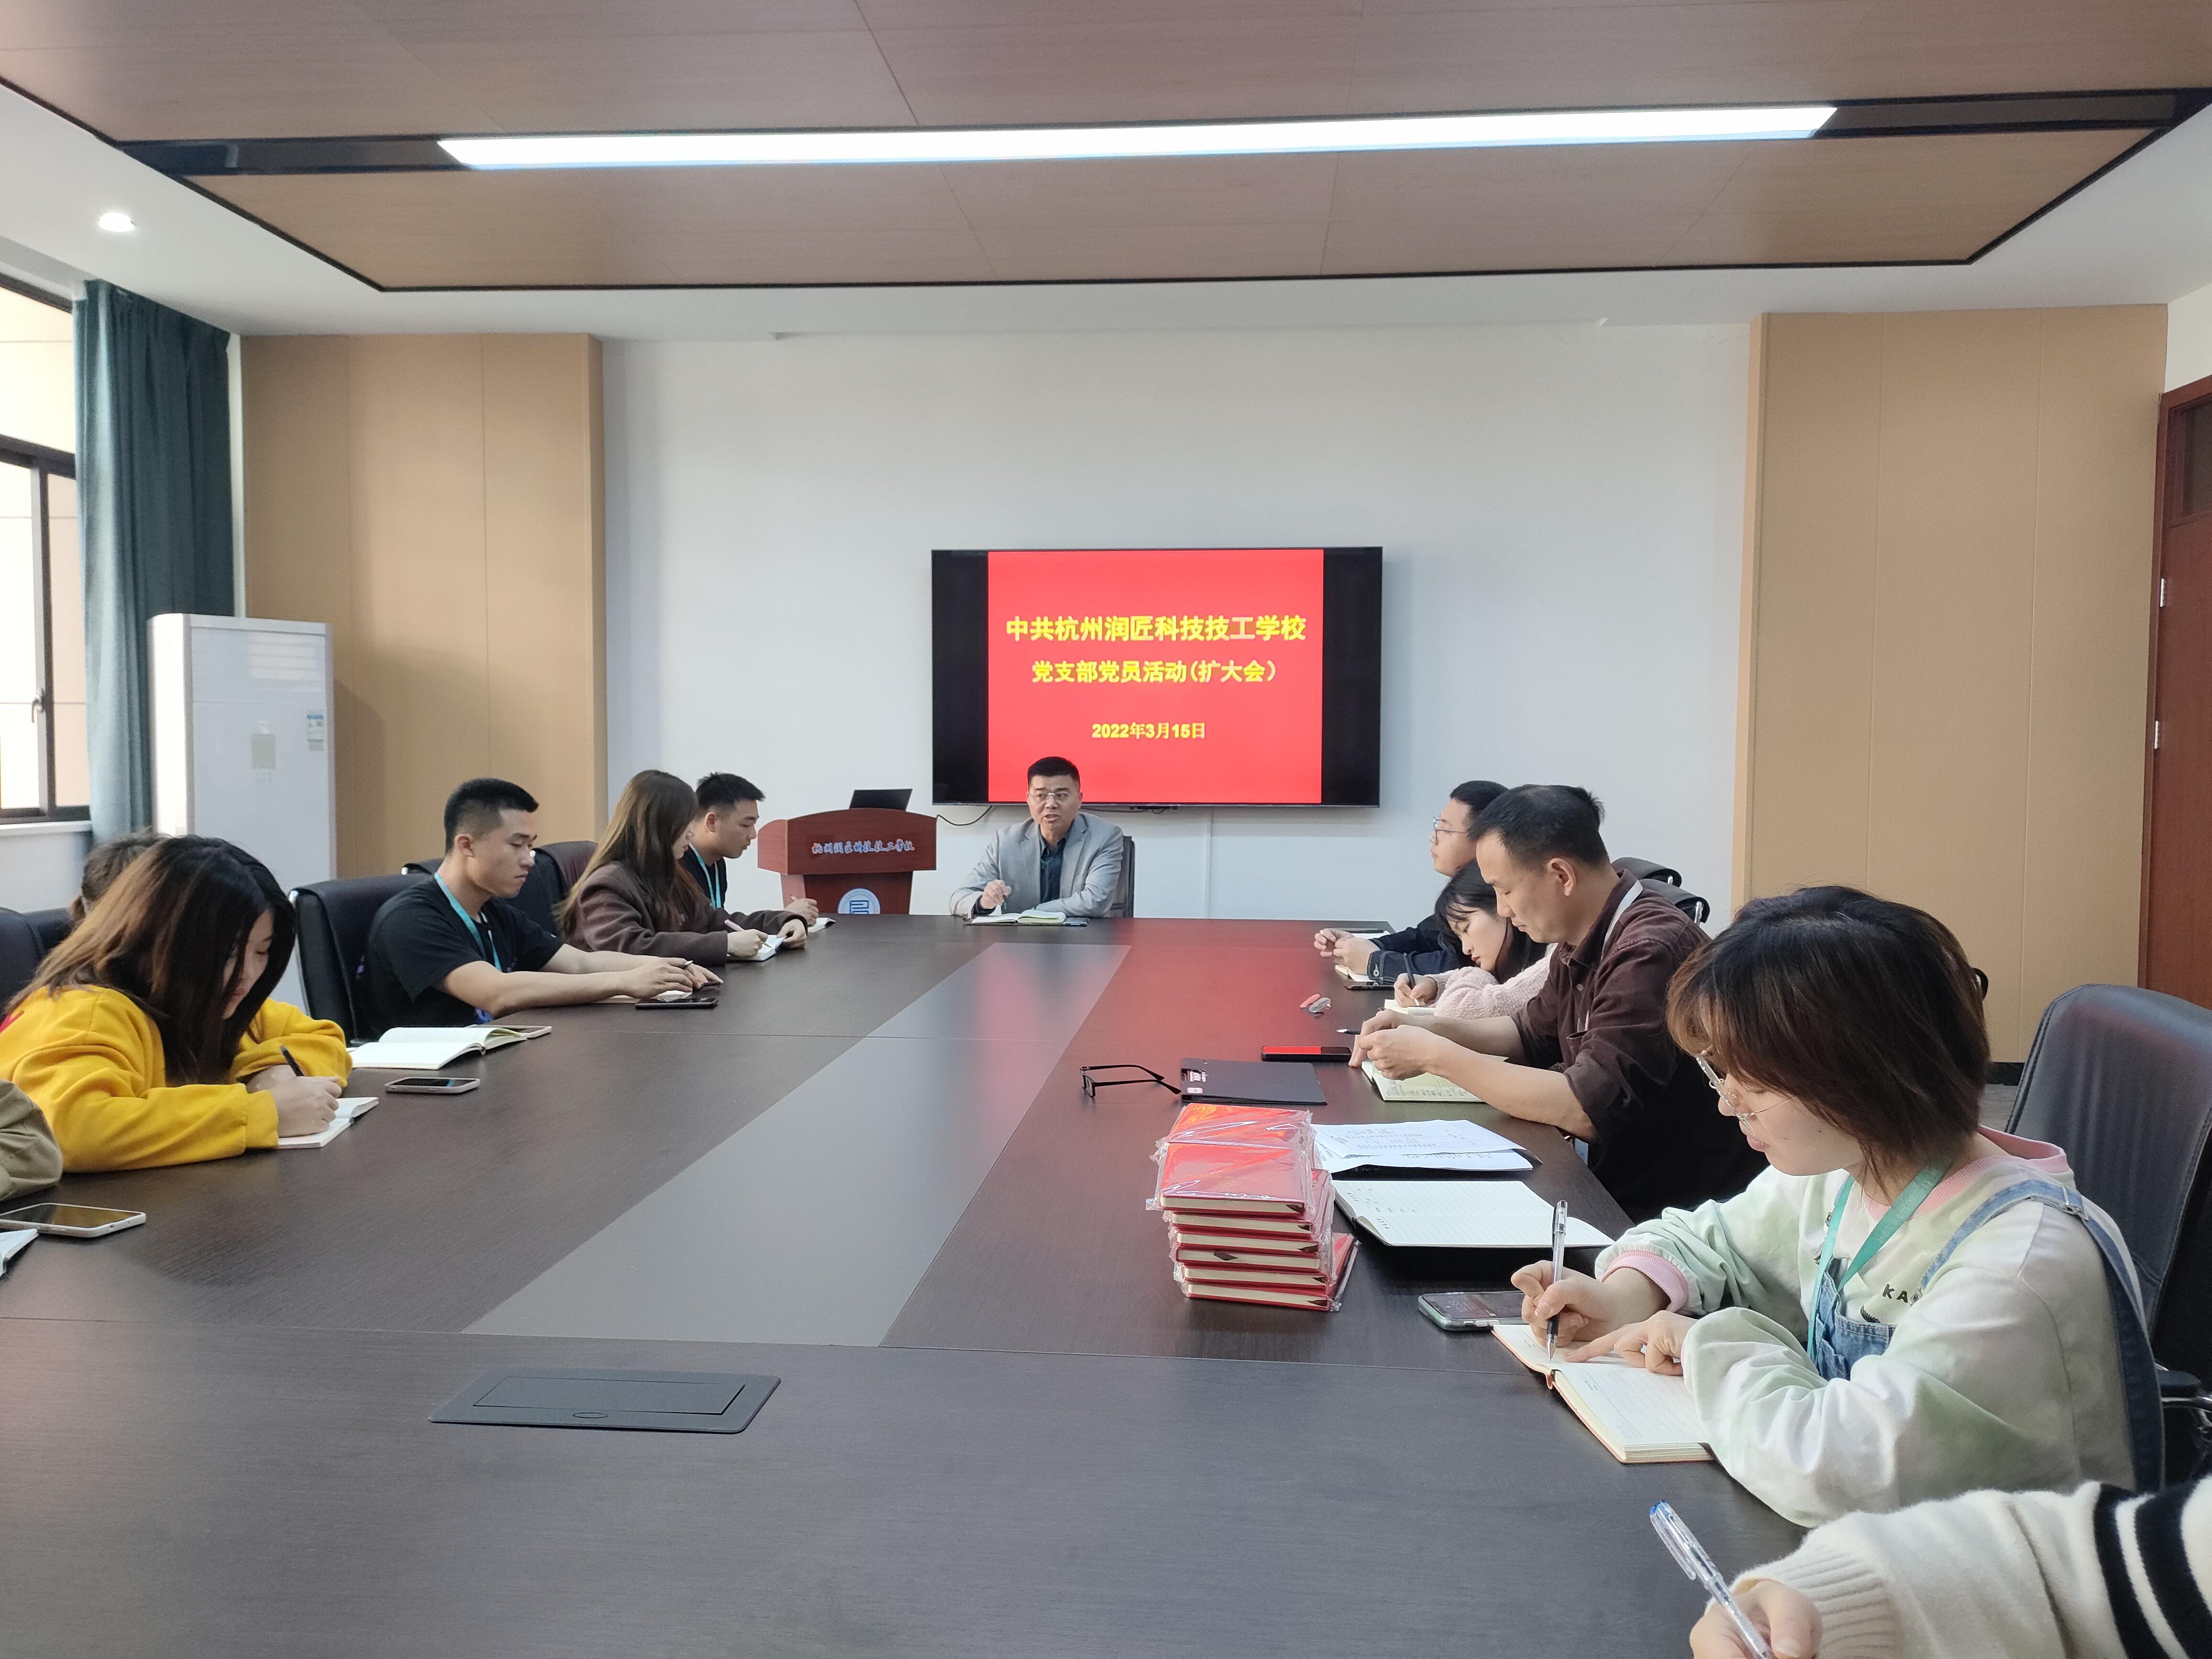  中共杭州润匠科技技工学校党员活动（扩大会）